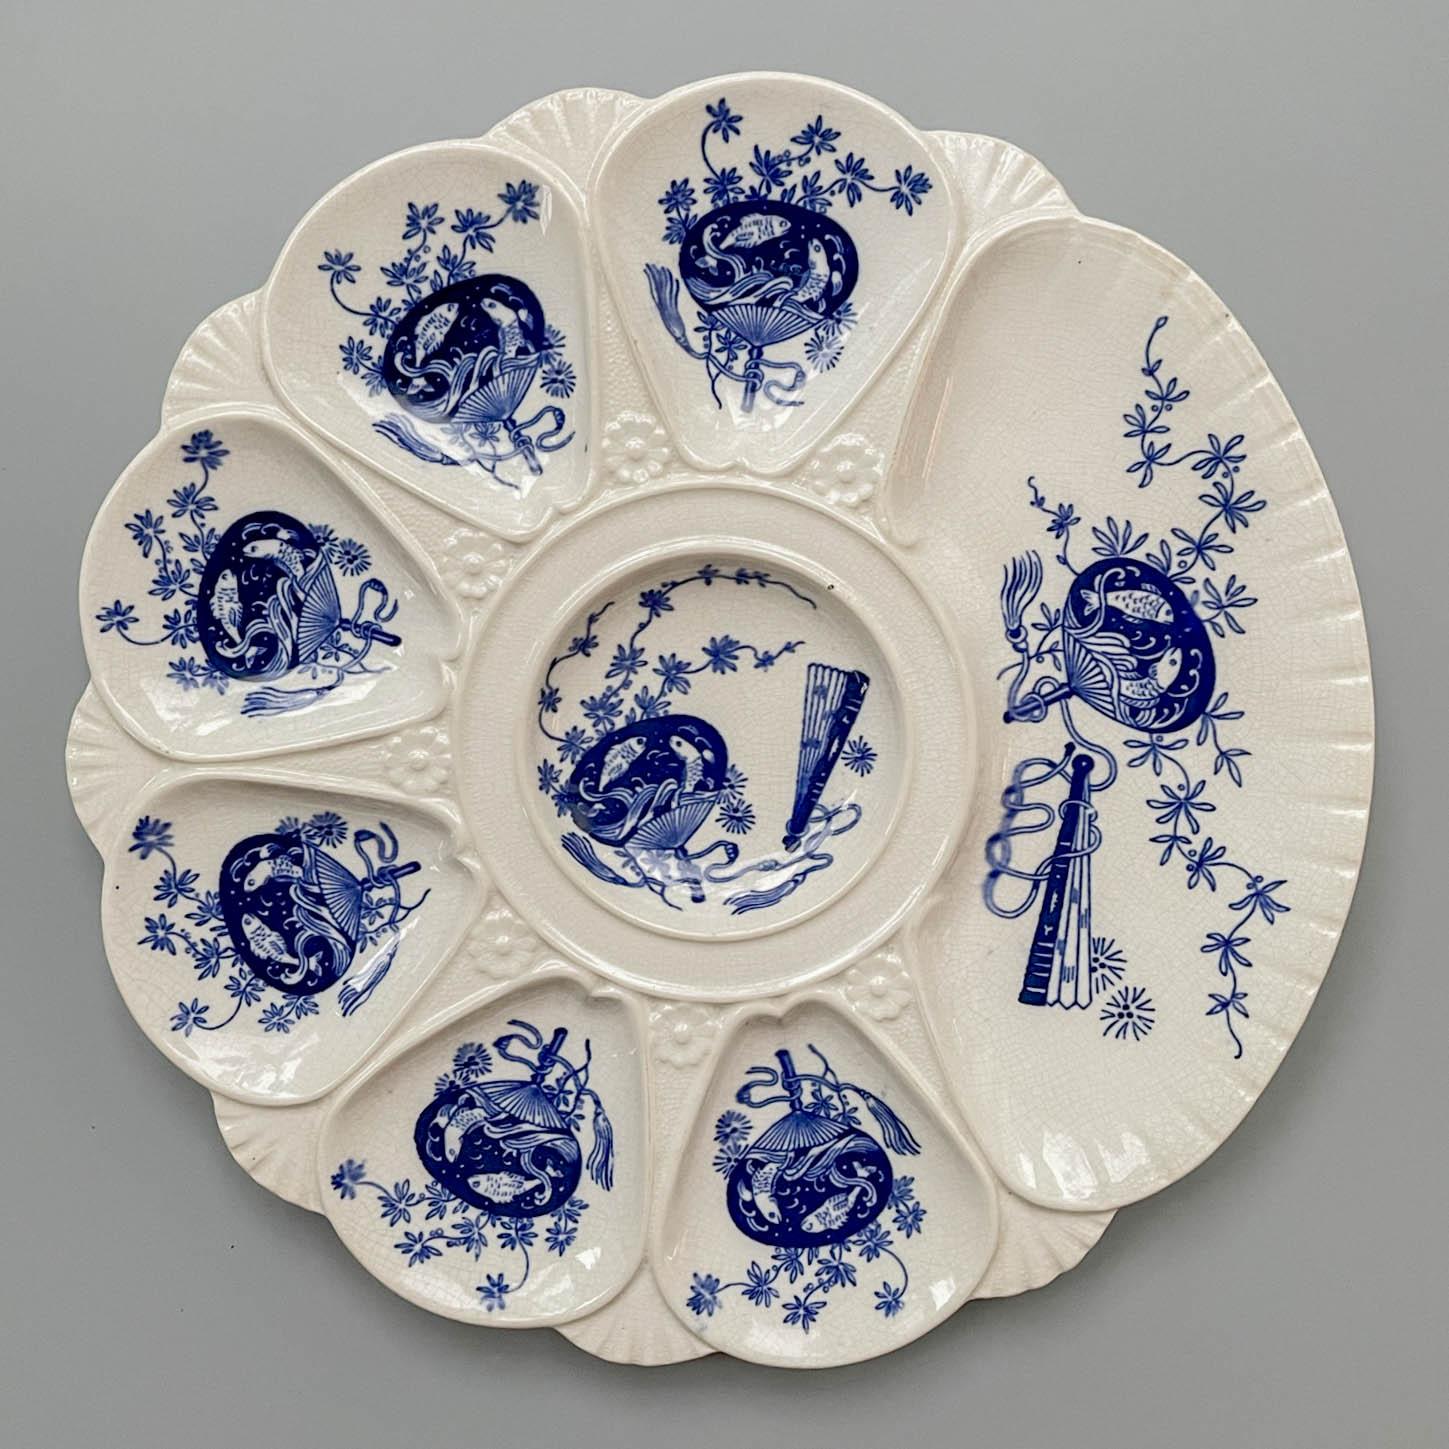 Eine viktorianische Minton Flow blauen Porzellan Austern Teller, mit sechs Austern Vertiefungen, ein Zentrum und eine große Vertiefung für Cracker. Die im Japonisme-Stil dekorierten Schalen sind mit indigoblauen Blumen und Fächern mit Koi-Fischen